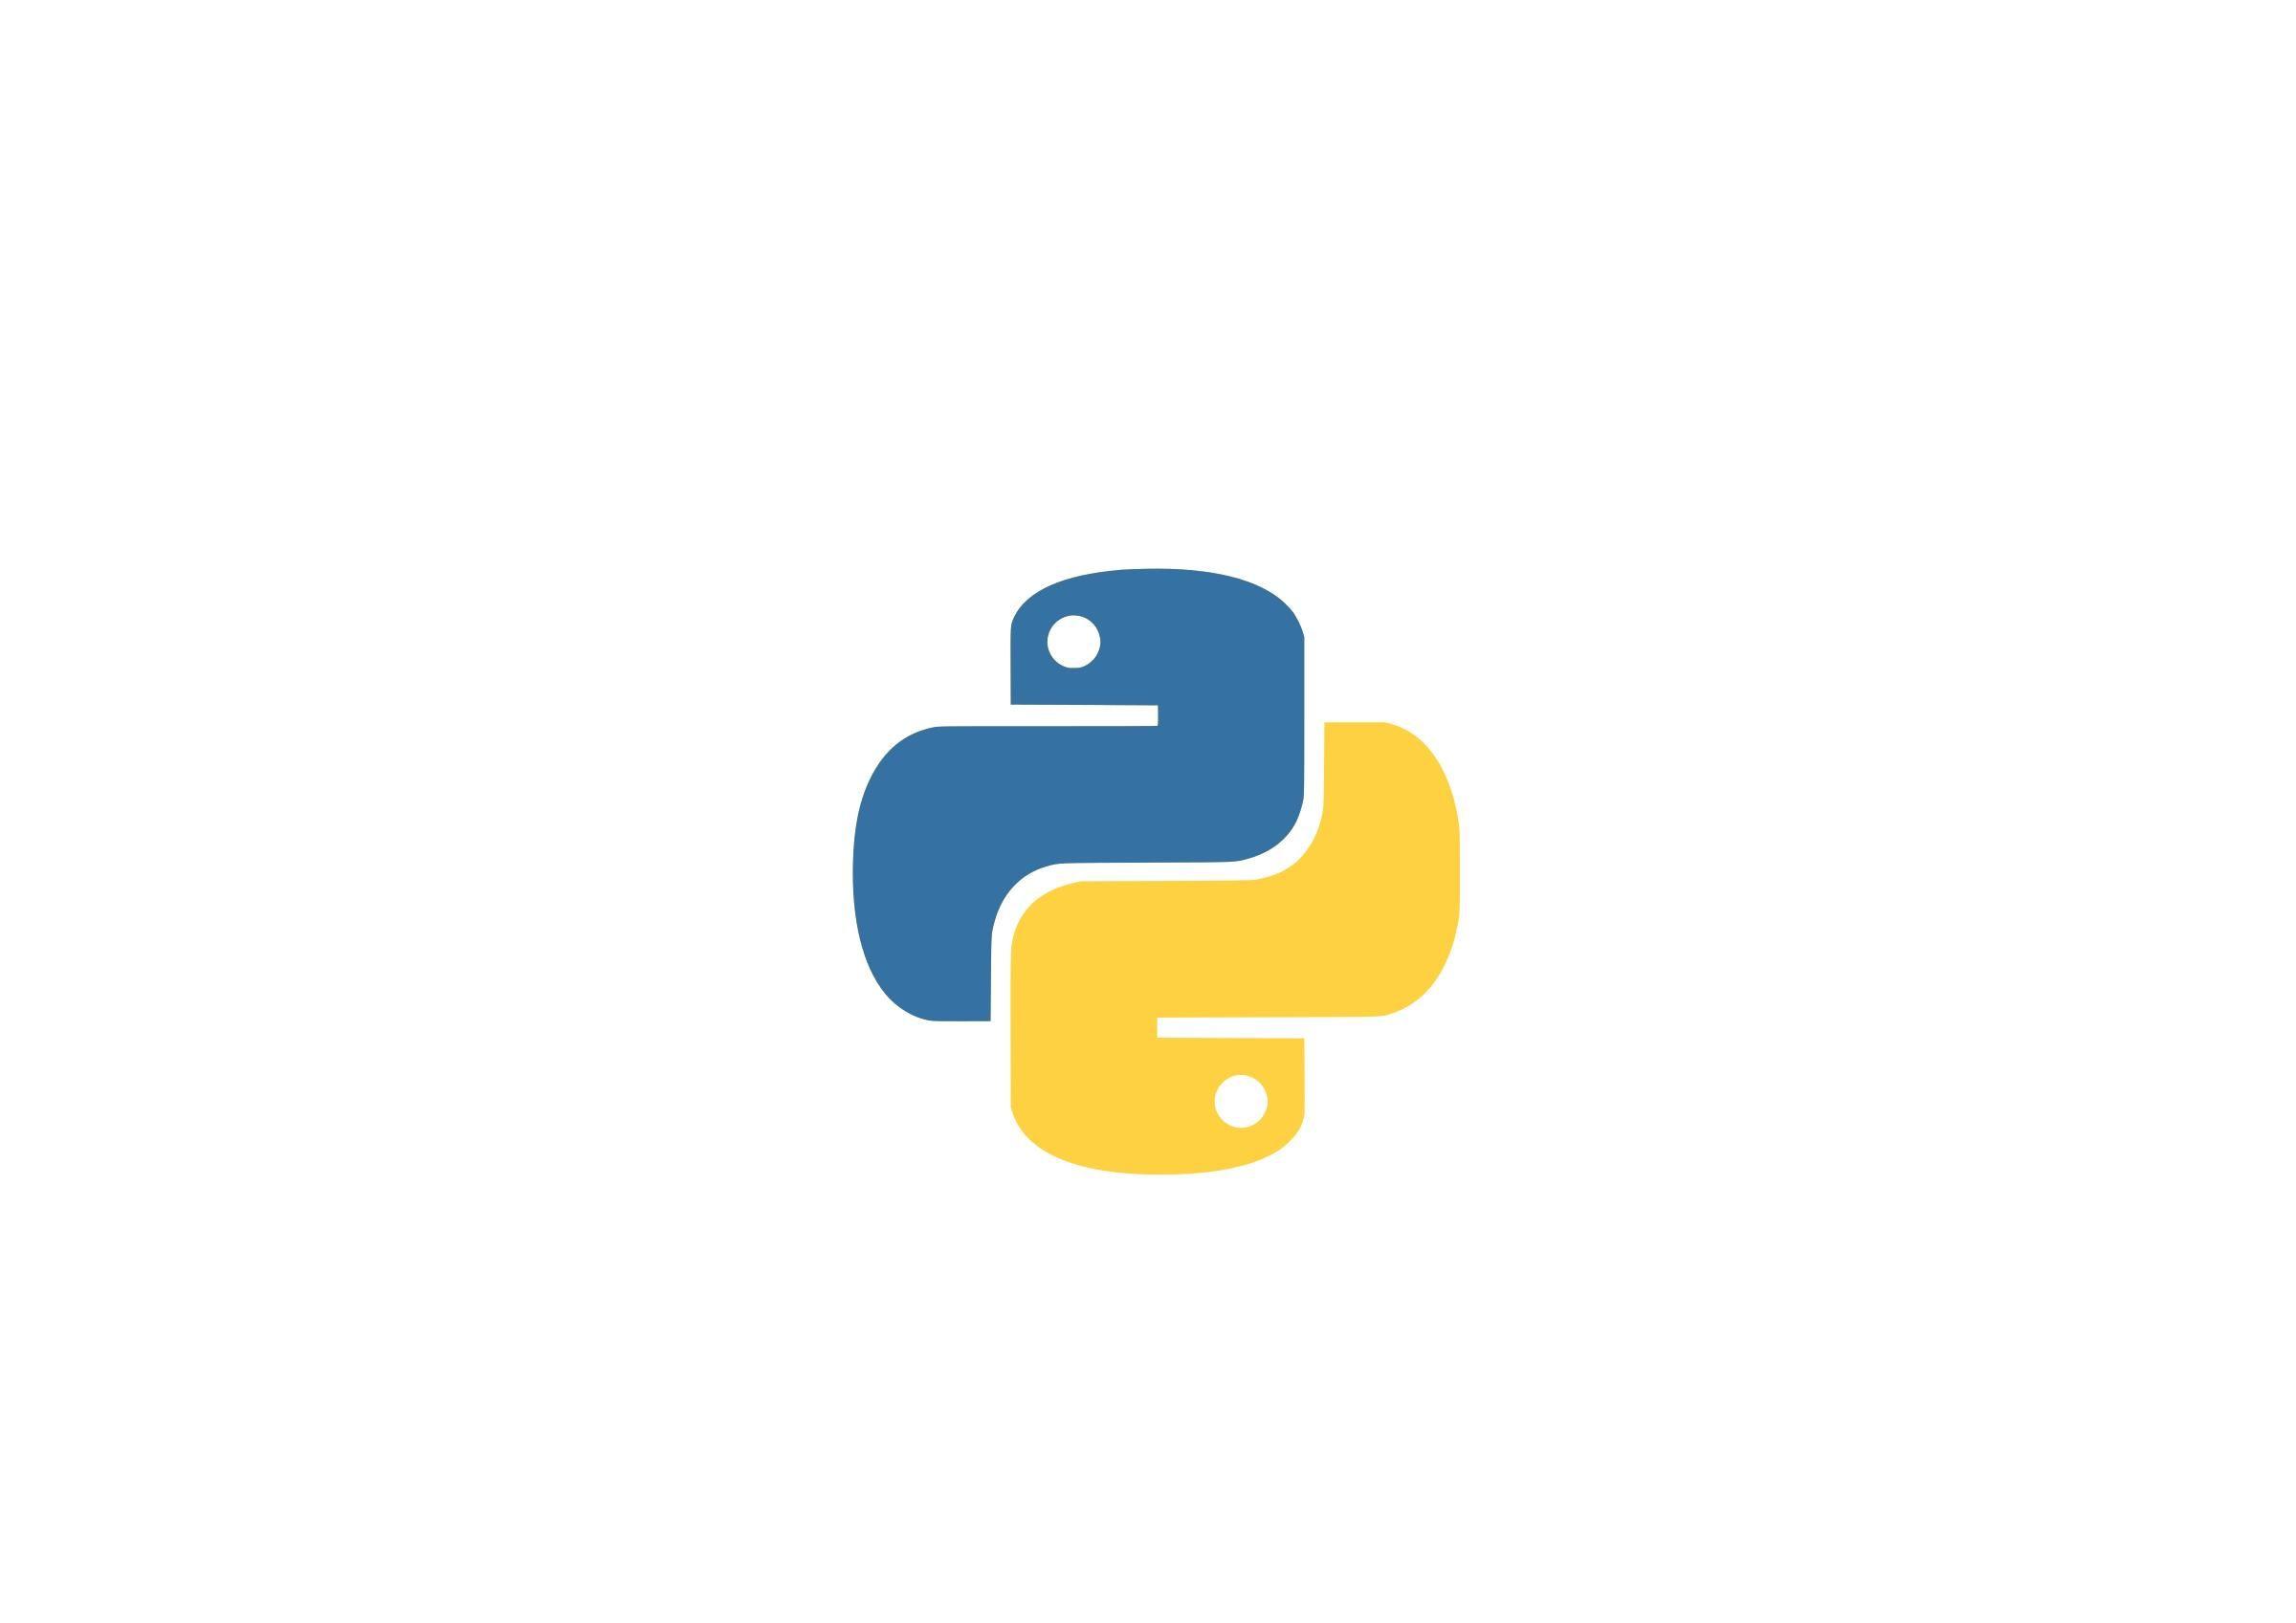 Language Logo - Python language logo Icons PNG - Free PNG and Icons Downloads